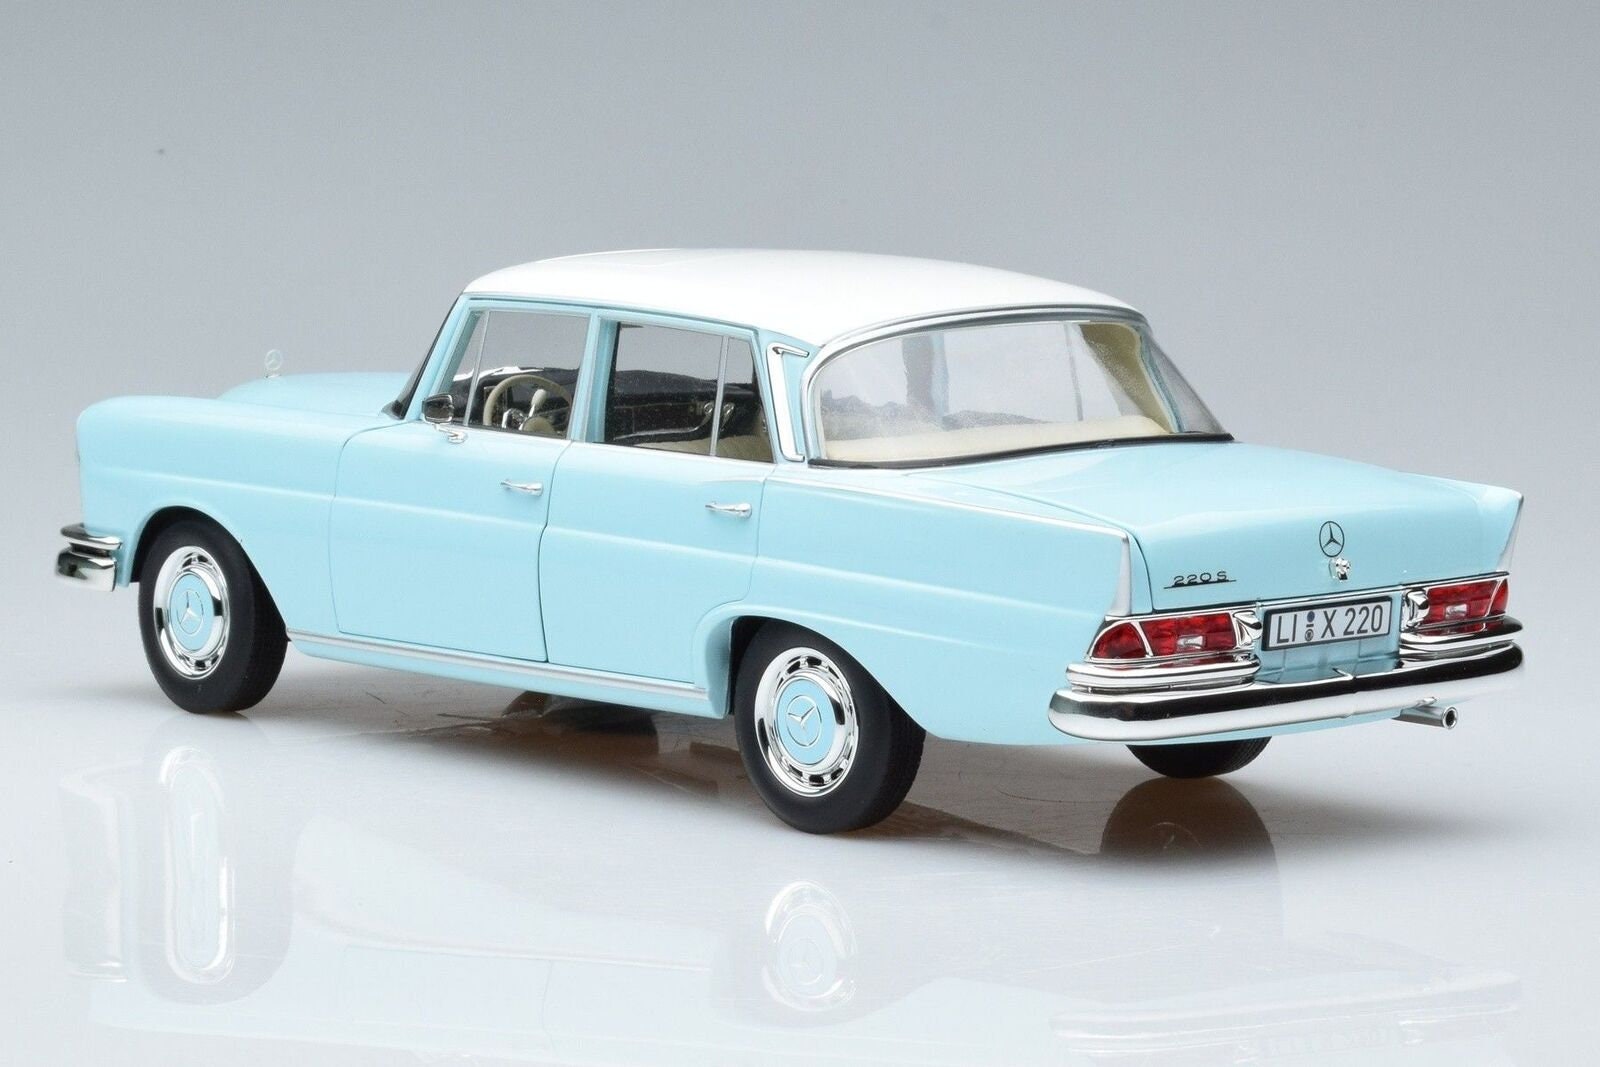 1968 Mercedes-benz 200 Light Blue 1/18 Diecast Model Car By Norev : Target